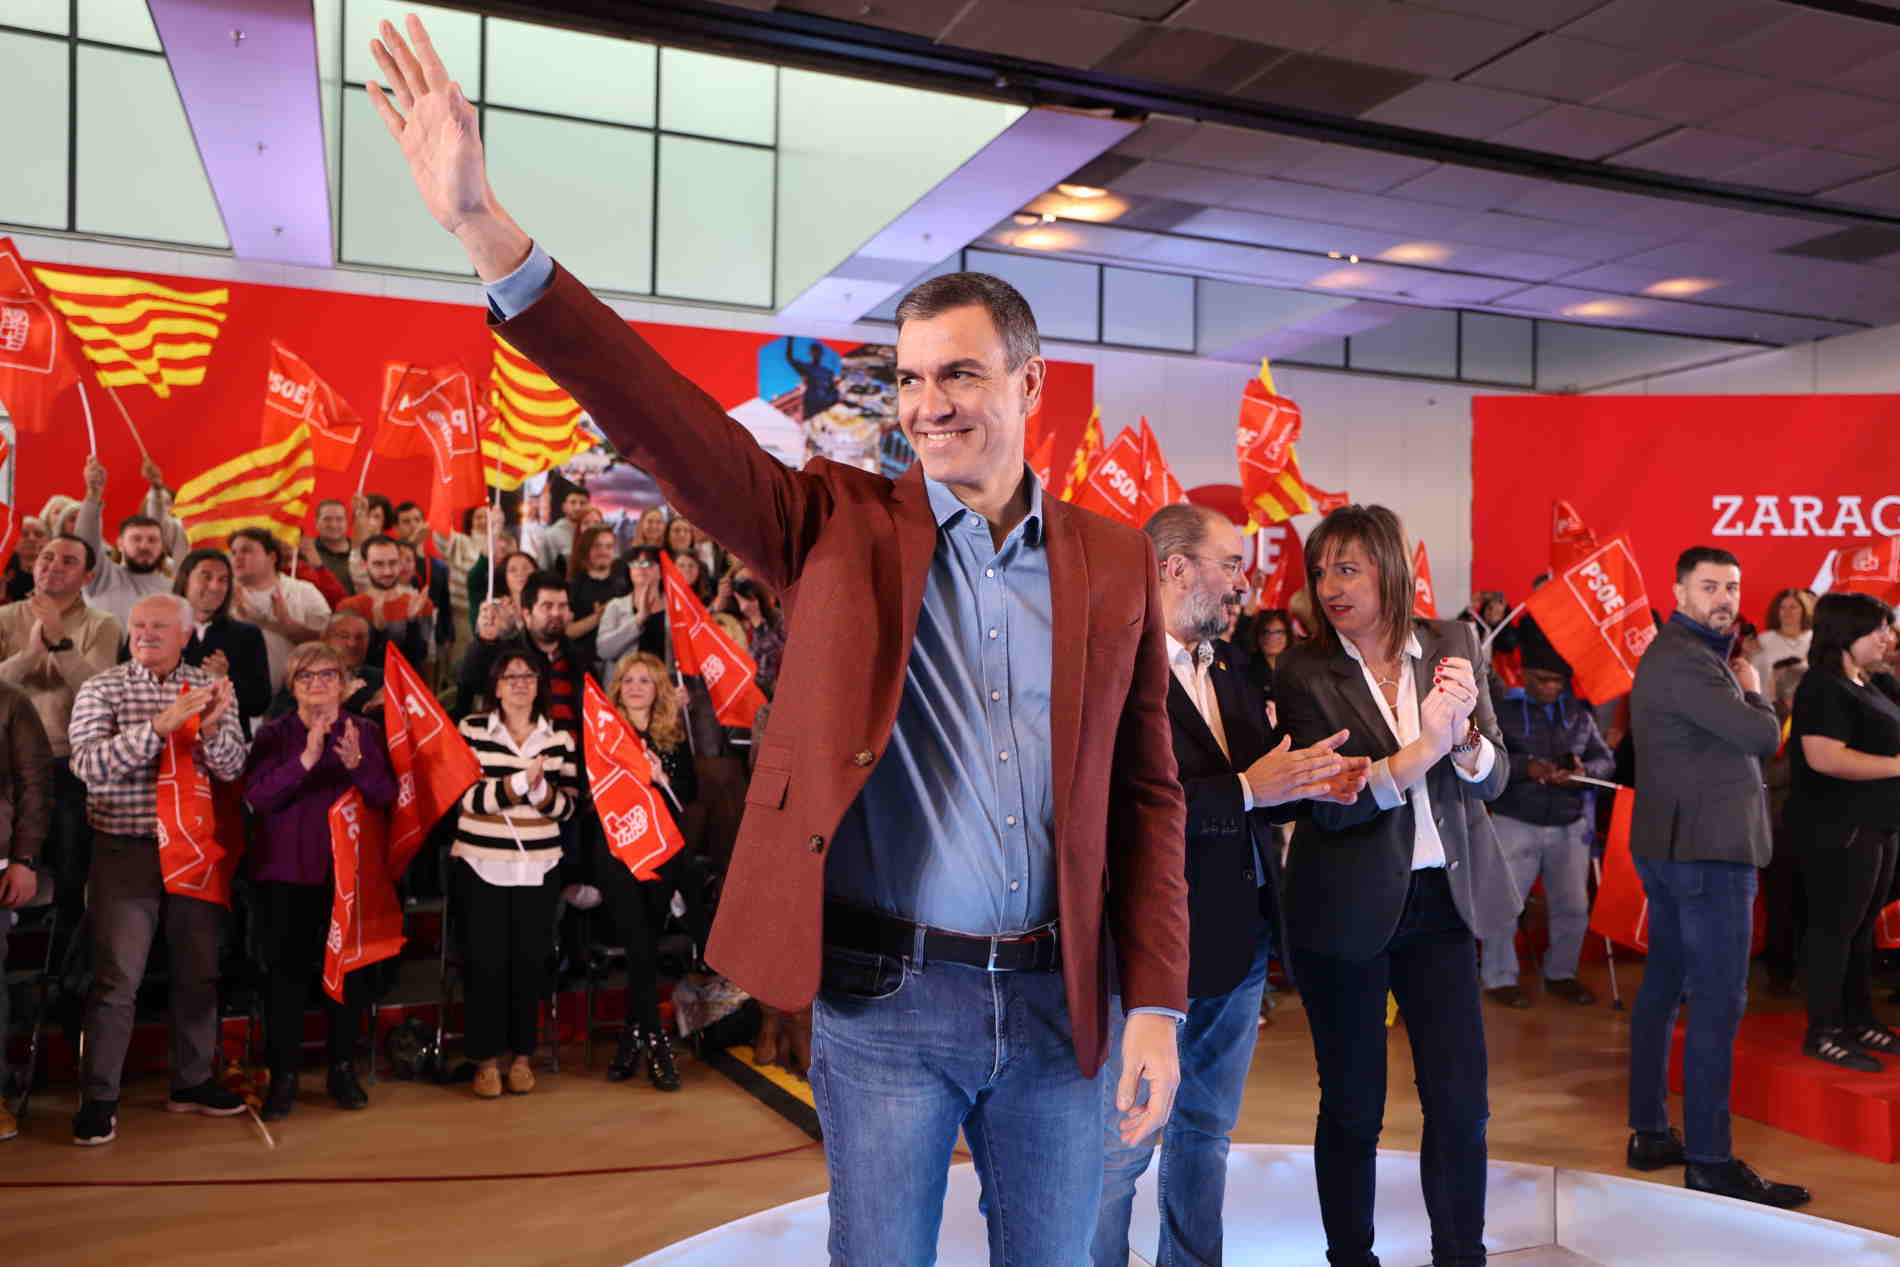 El PSOE calienta motores de cara al ciclo electoral de mayo: presenta el lema "Defiende lo que piensas"